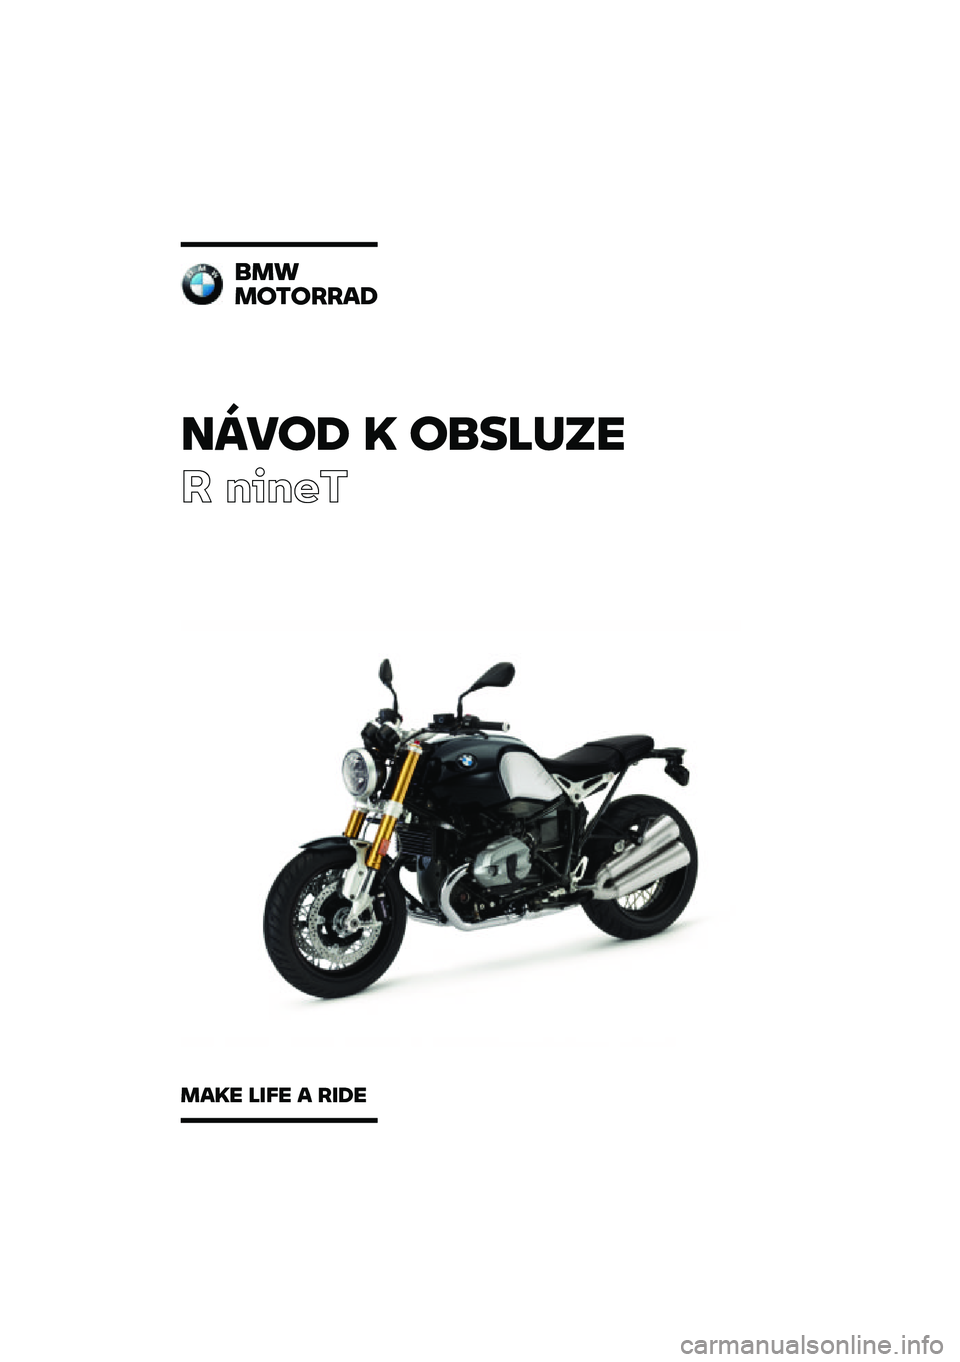 BMW MOTORRAD R NINE T 2020  Návod k obsluze (in Czech) �����\b �	 ��
��\f�
��
� �����
�
��
��������\b
���	� �\f��� � ���\b� 